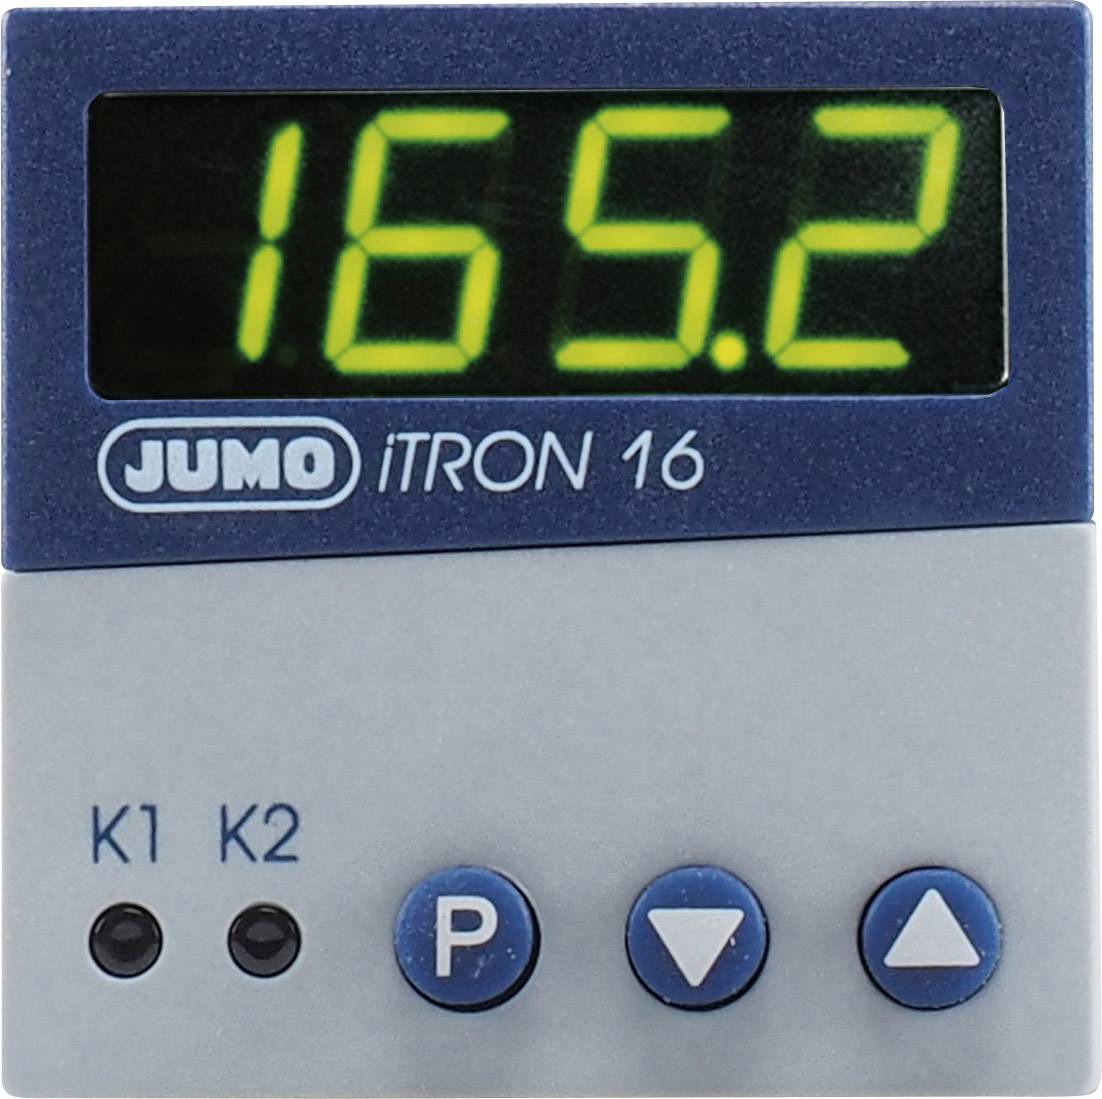 Jumo Itron 16 Pid Temperature Controller Pt100 Pt1000 Kty11 6 L J U T K N S R B 0 Up To 10 C 3 A Relay Conrad Com